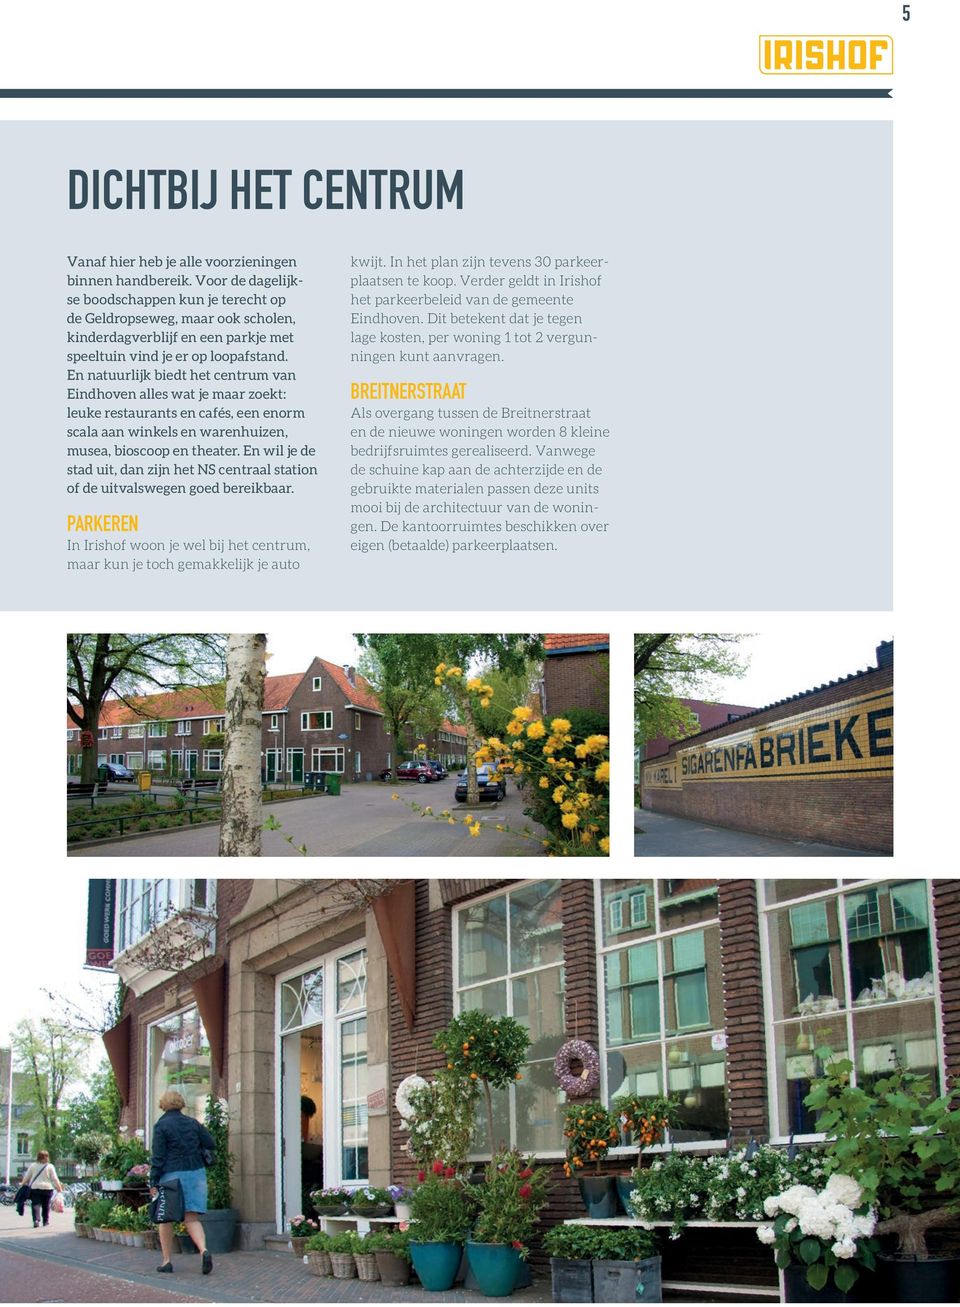 En natuurlijk biedt het centrum van Eindhoven alles wat je maar zoekt: leuke restaurants en cafés, een enorm scala aan winkels en warenhuizen, musea, bioscoop en theater.